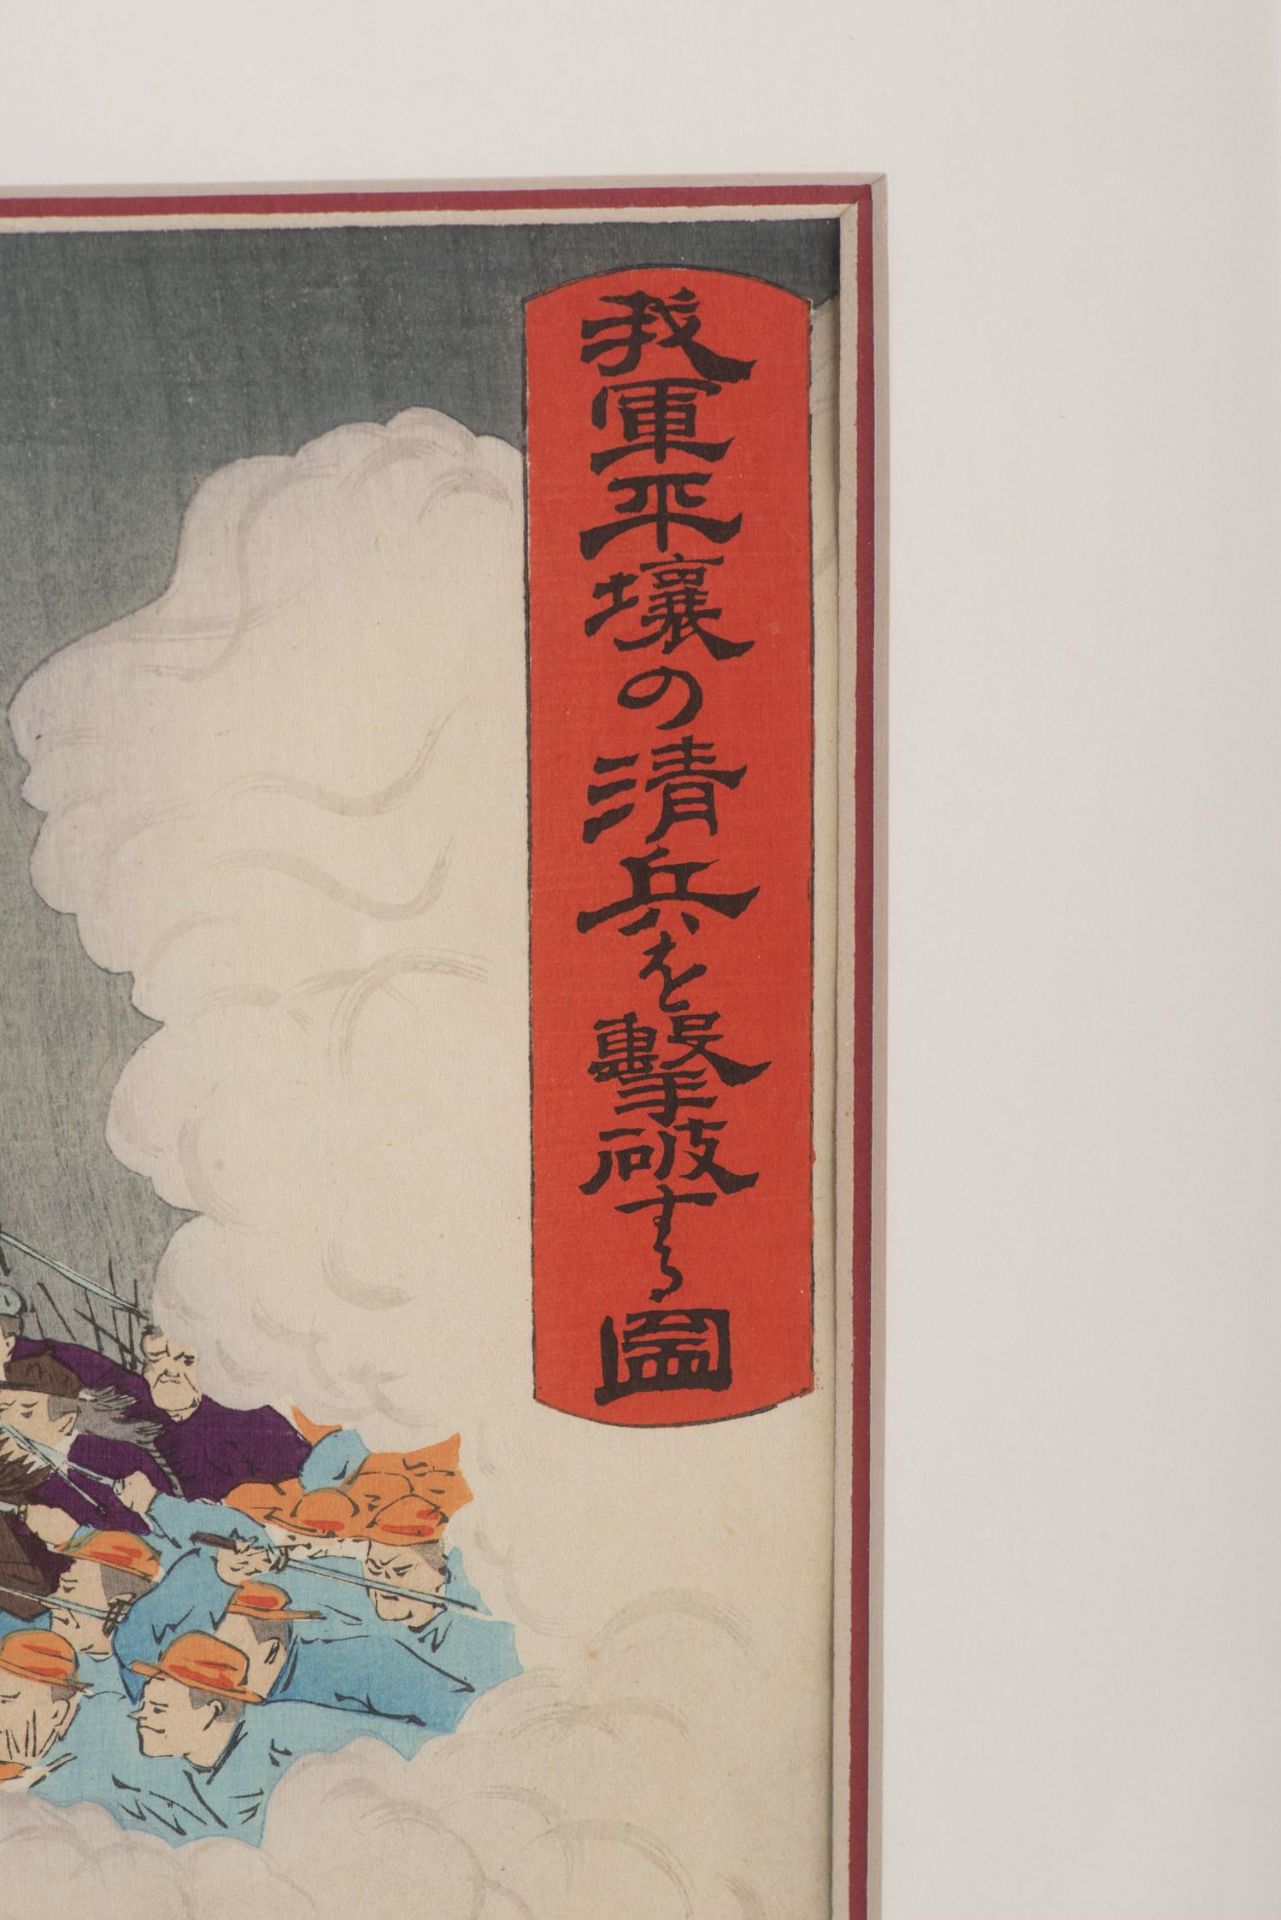 JAPON, Triptyque, The Sino-Japanese War, Adachi Ginko (1874-1897), "Waga gun Heijo no shinhei o... - Image 7 of 8